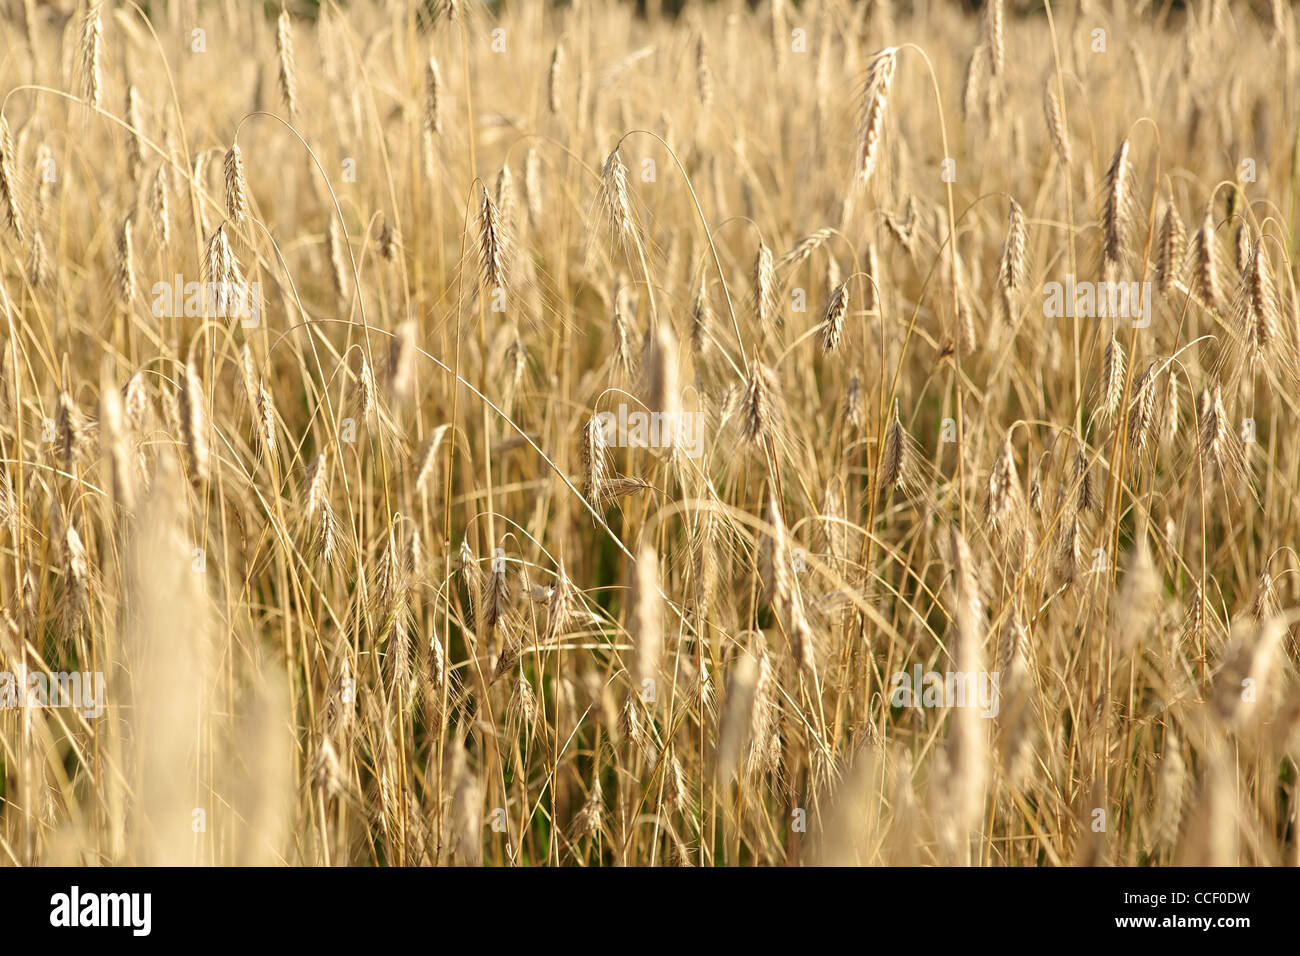 Golden wheat field in the autumn season Stock Photo